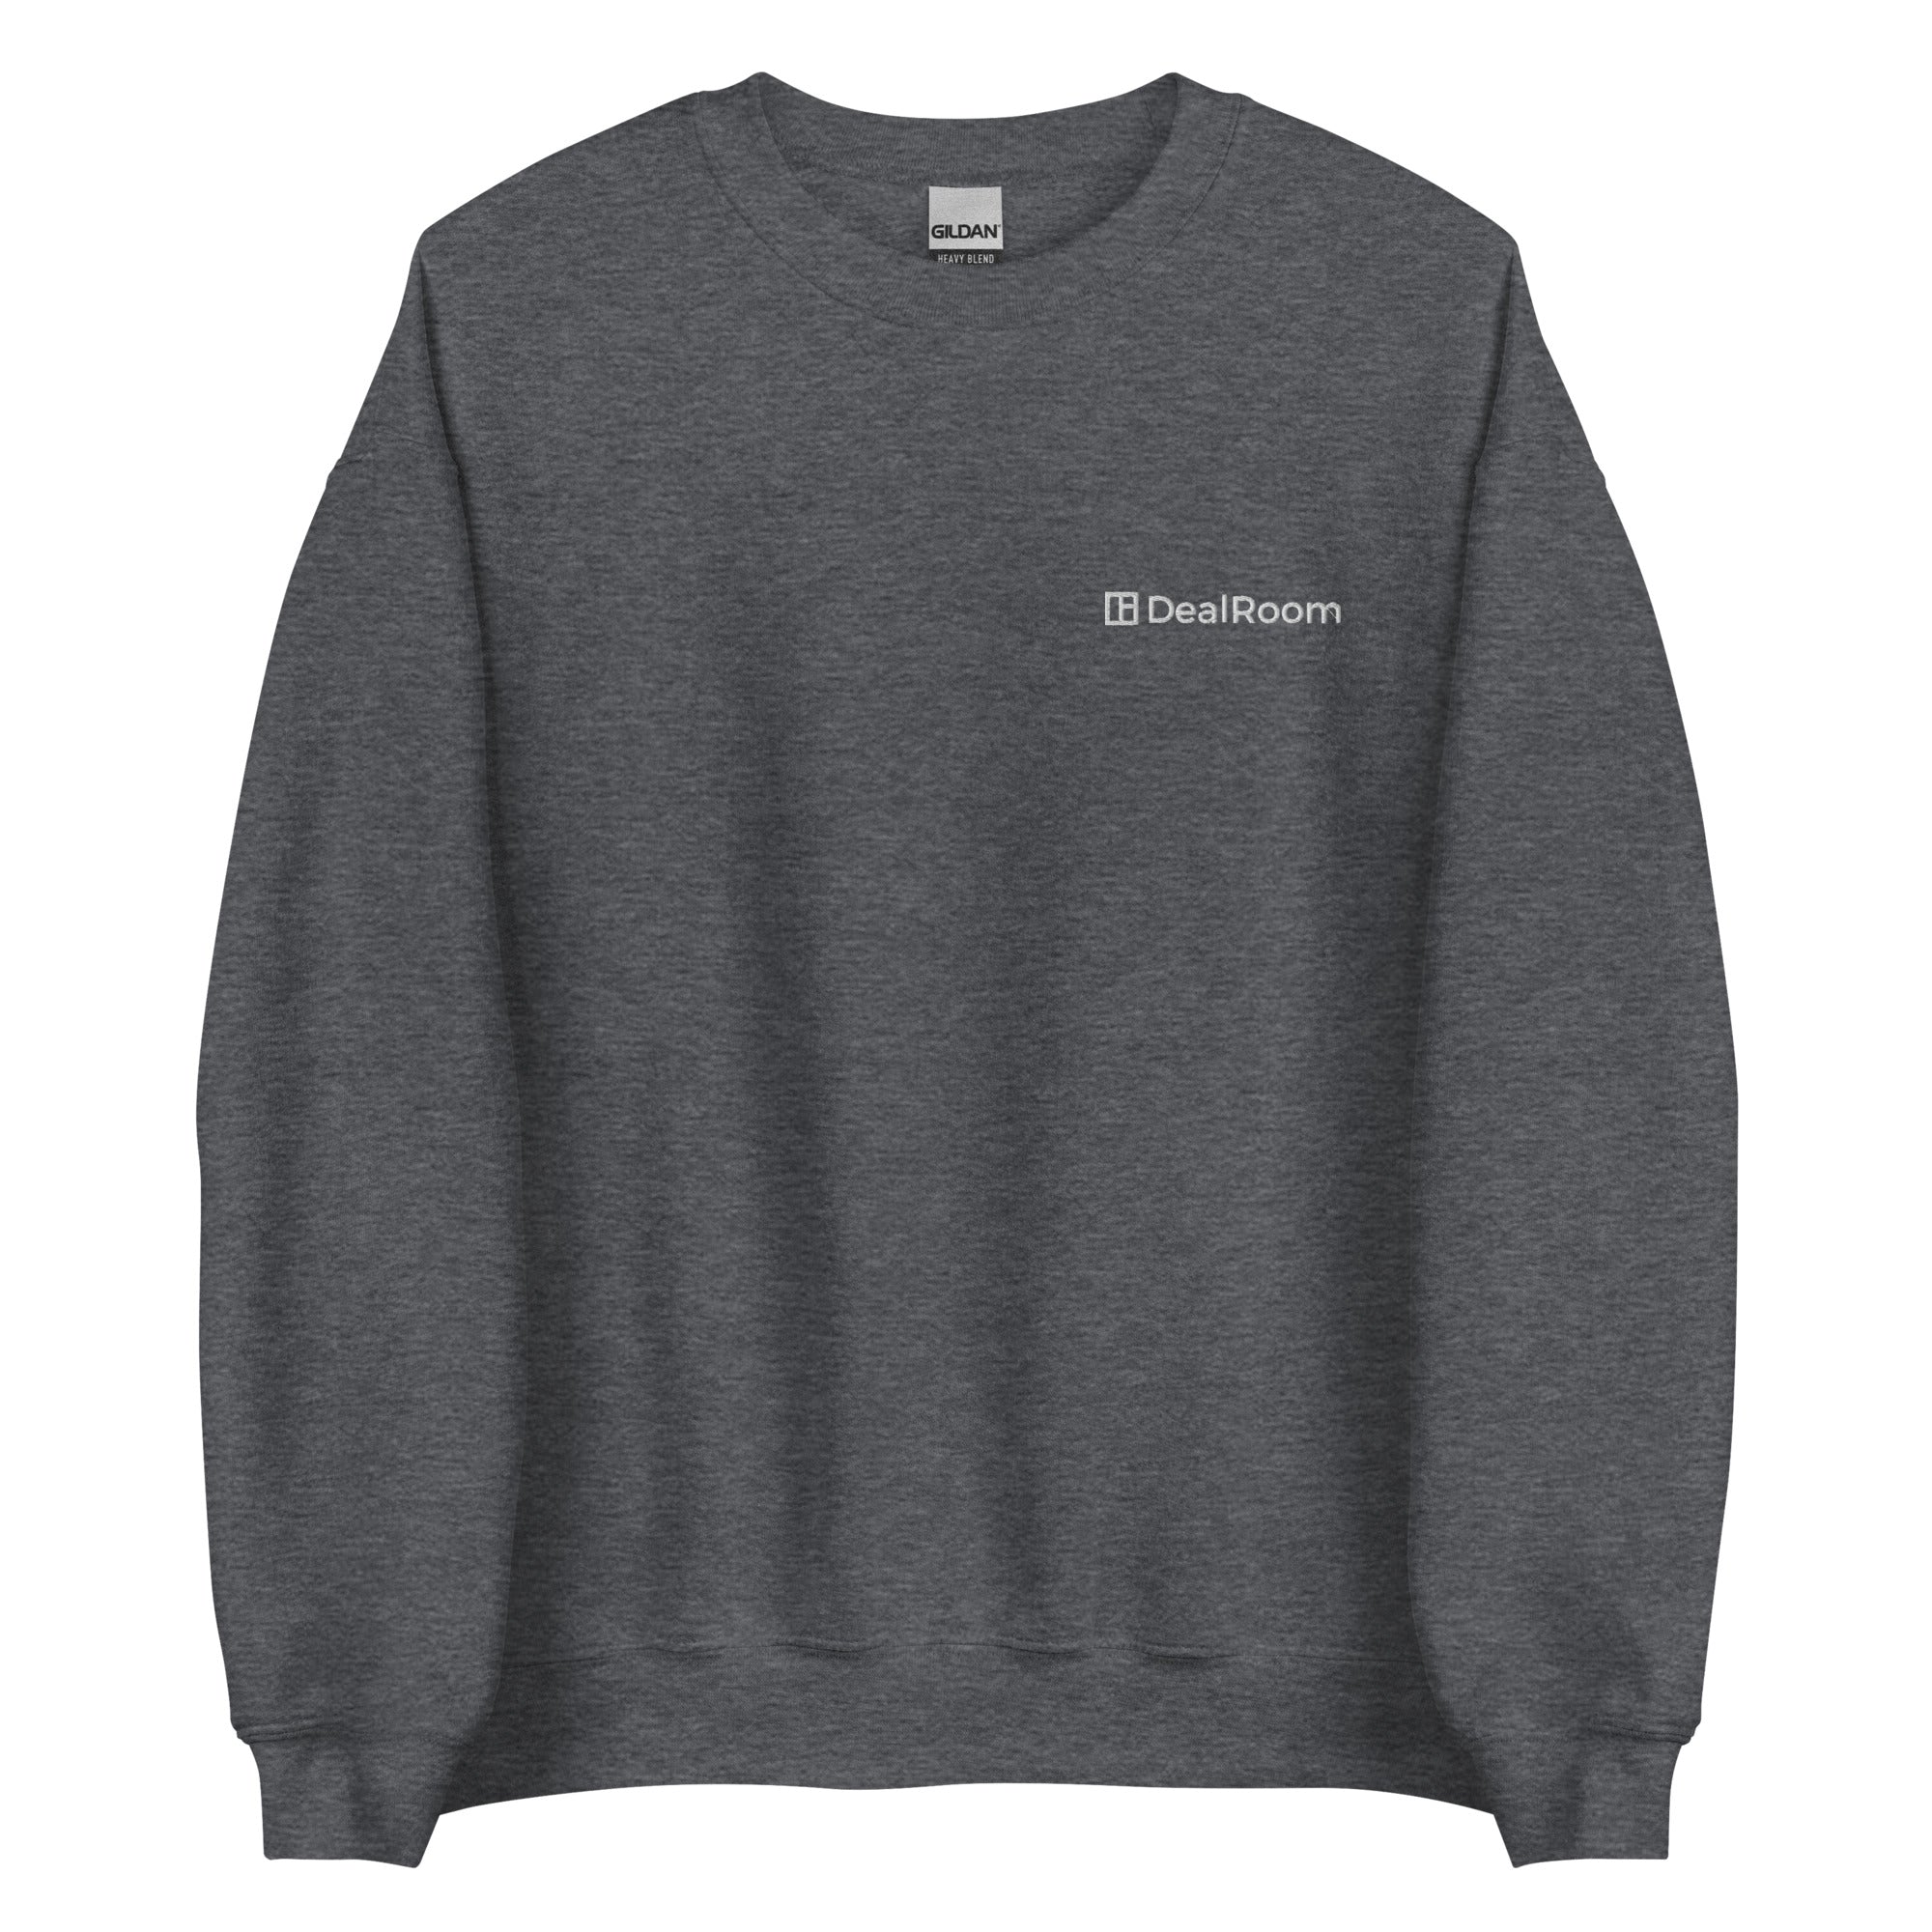 DealRoom Unisex Sweatshirt